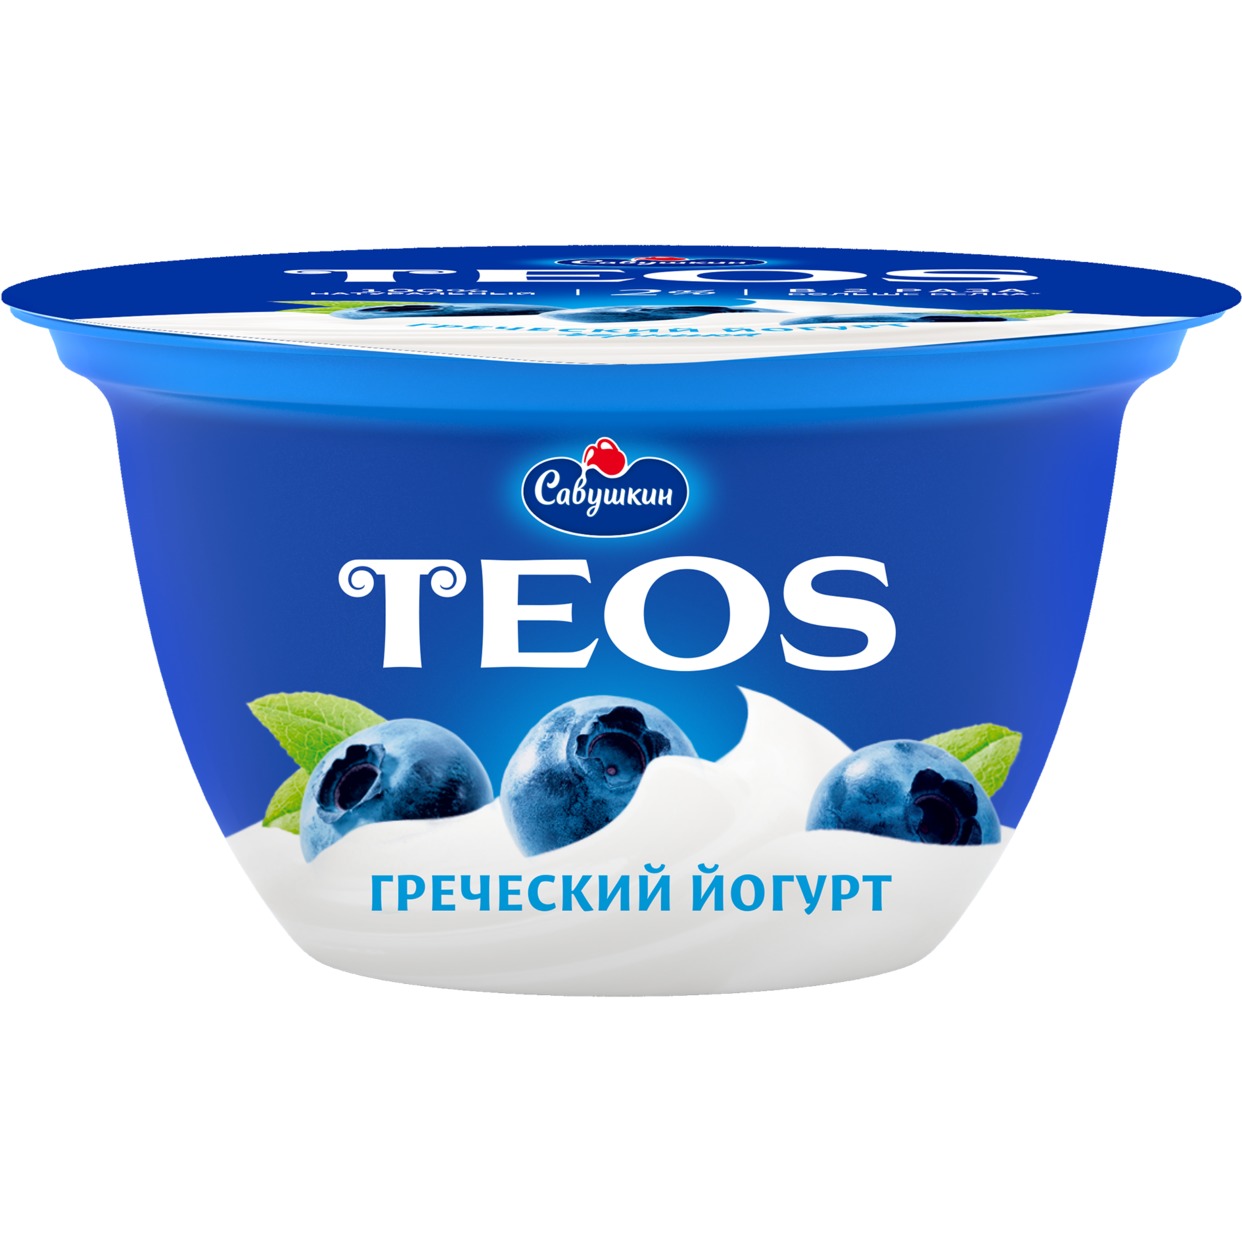 Йогурт "Греческий"массовой долей жира 2,0% с фруктовым наполнителем "черника", 140 гр.